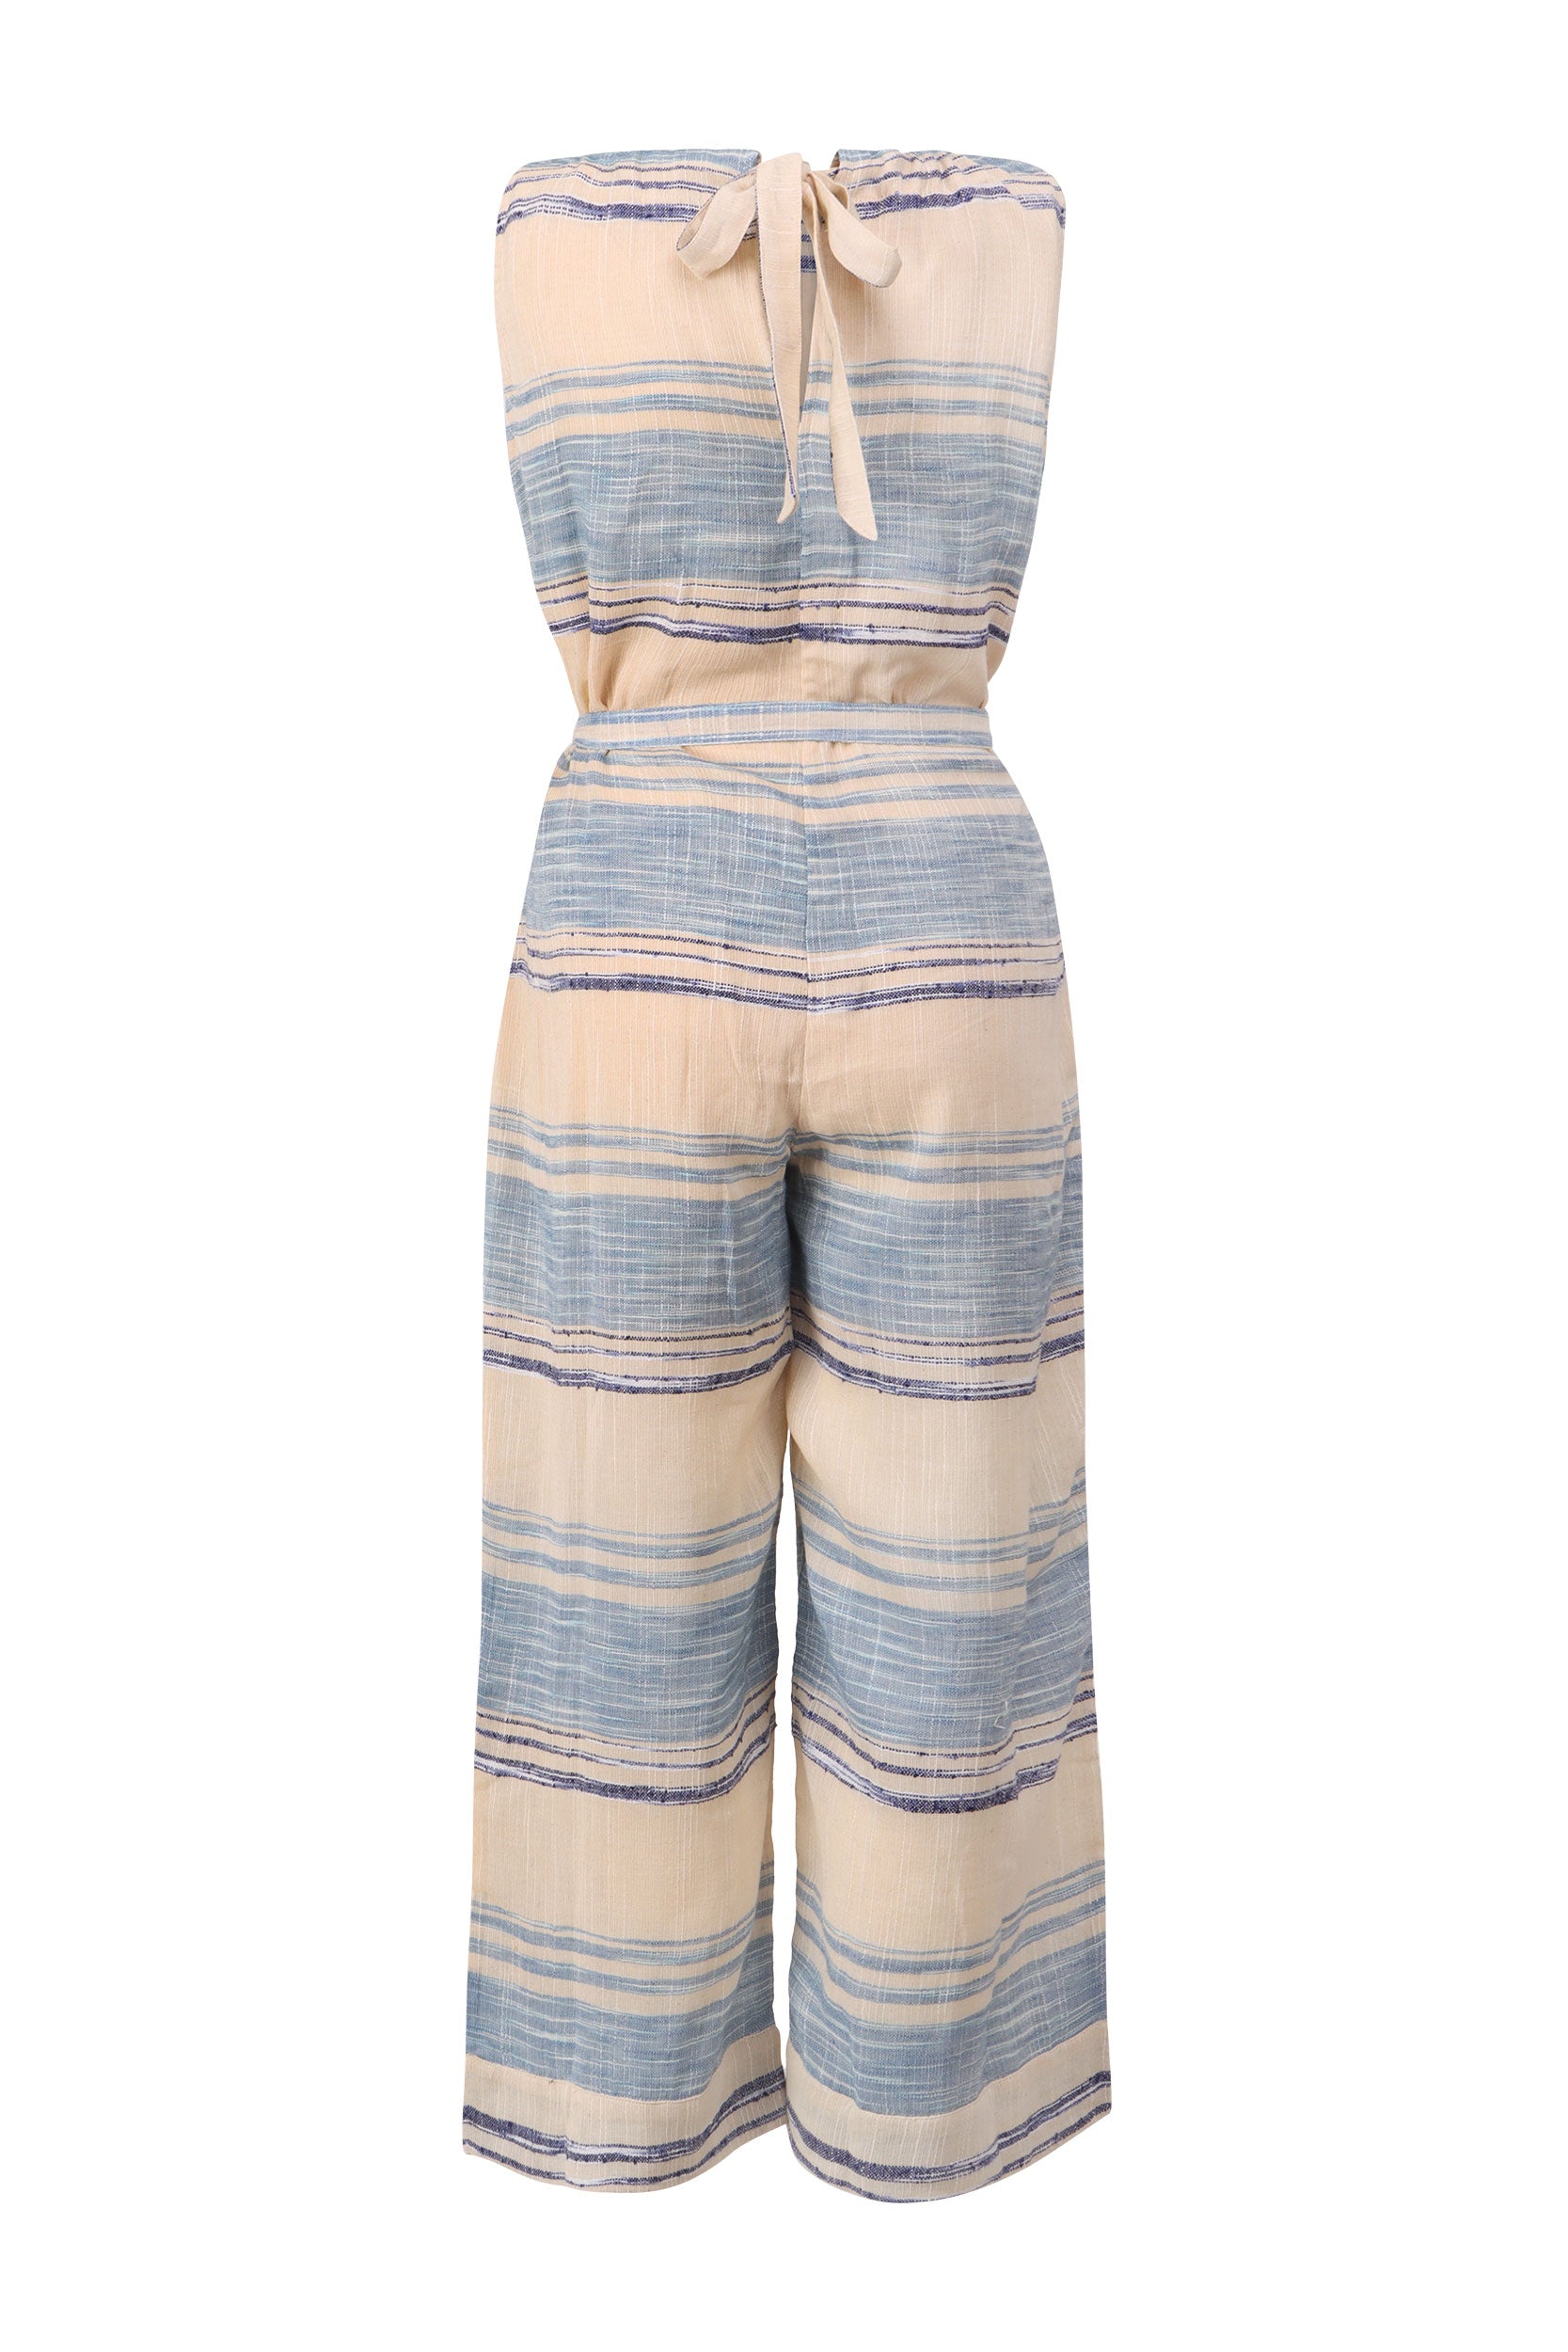 Womens Cotton Linen Loose Jumpsuit Romper Ladies Summer Wide Leg Playsuit  Pants | eBay